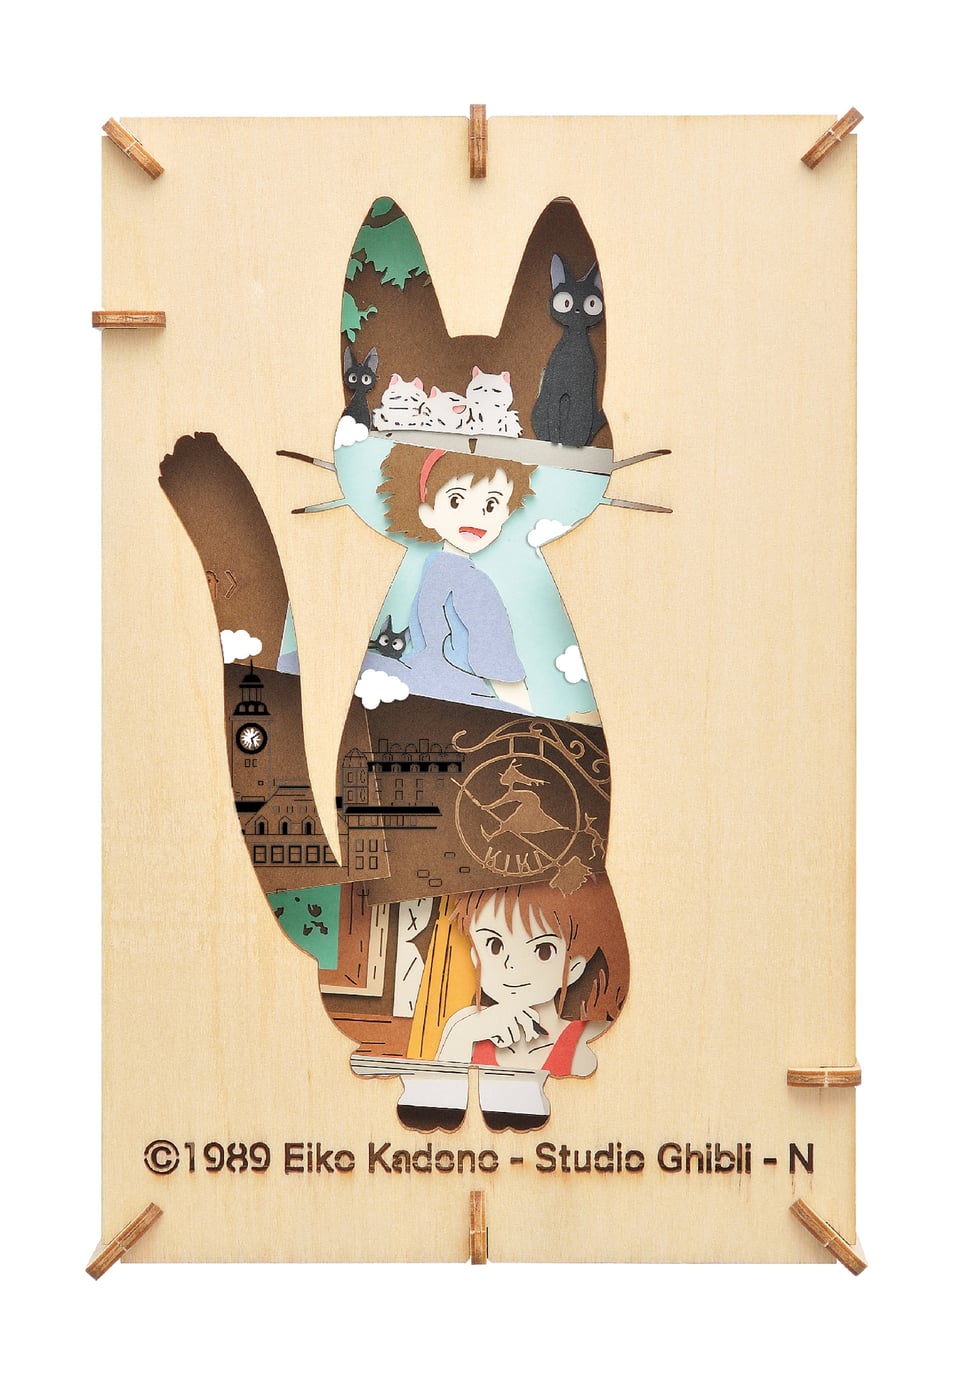 Kiki's Delivery Service “Studio Ghibli” Paper Theater Ball